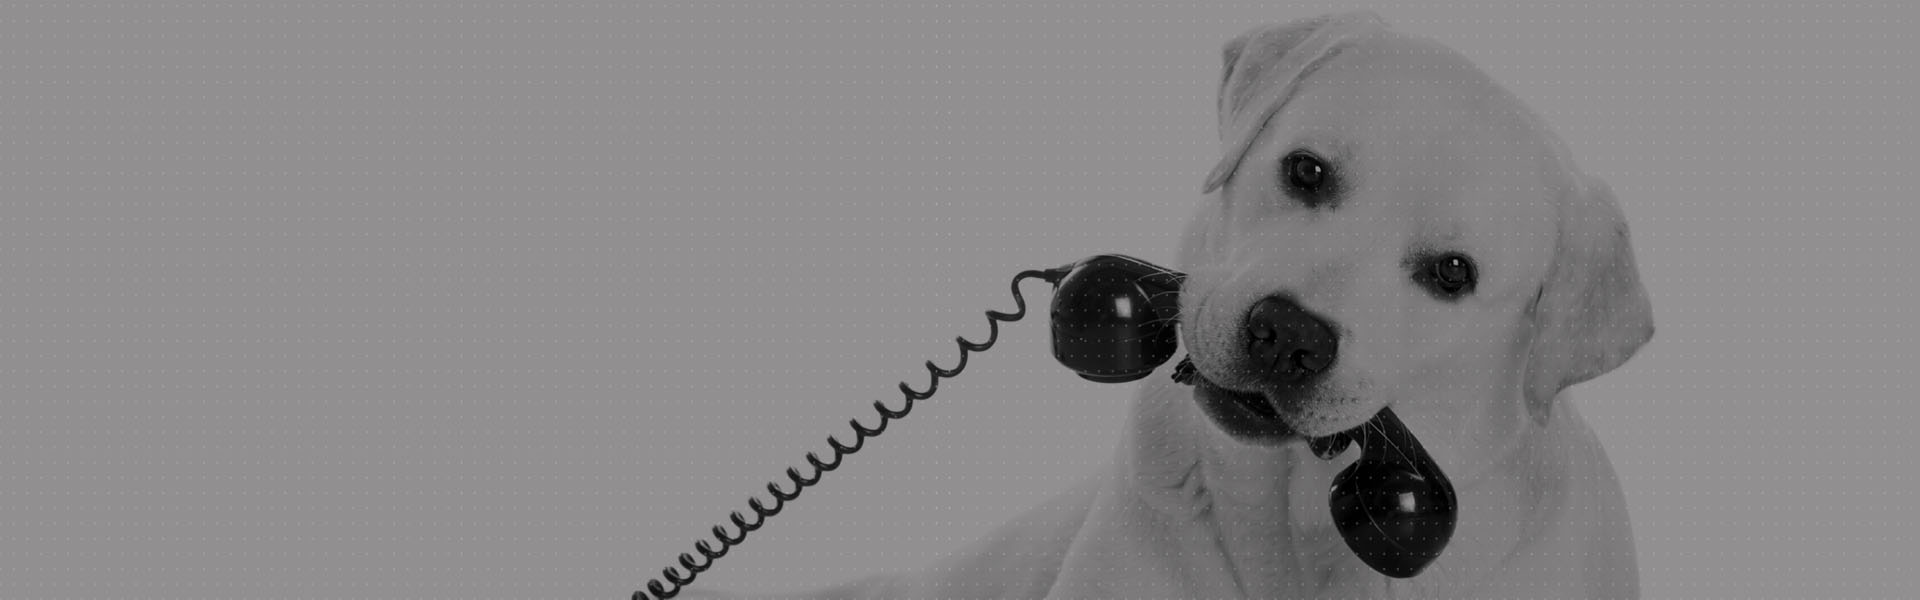 dog-phone-veterinary-marketing